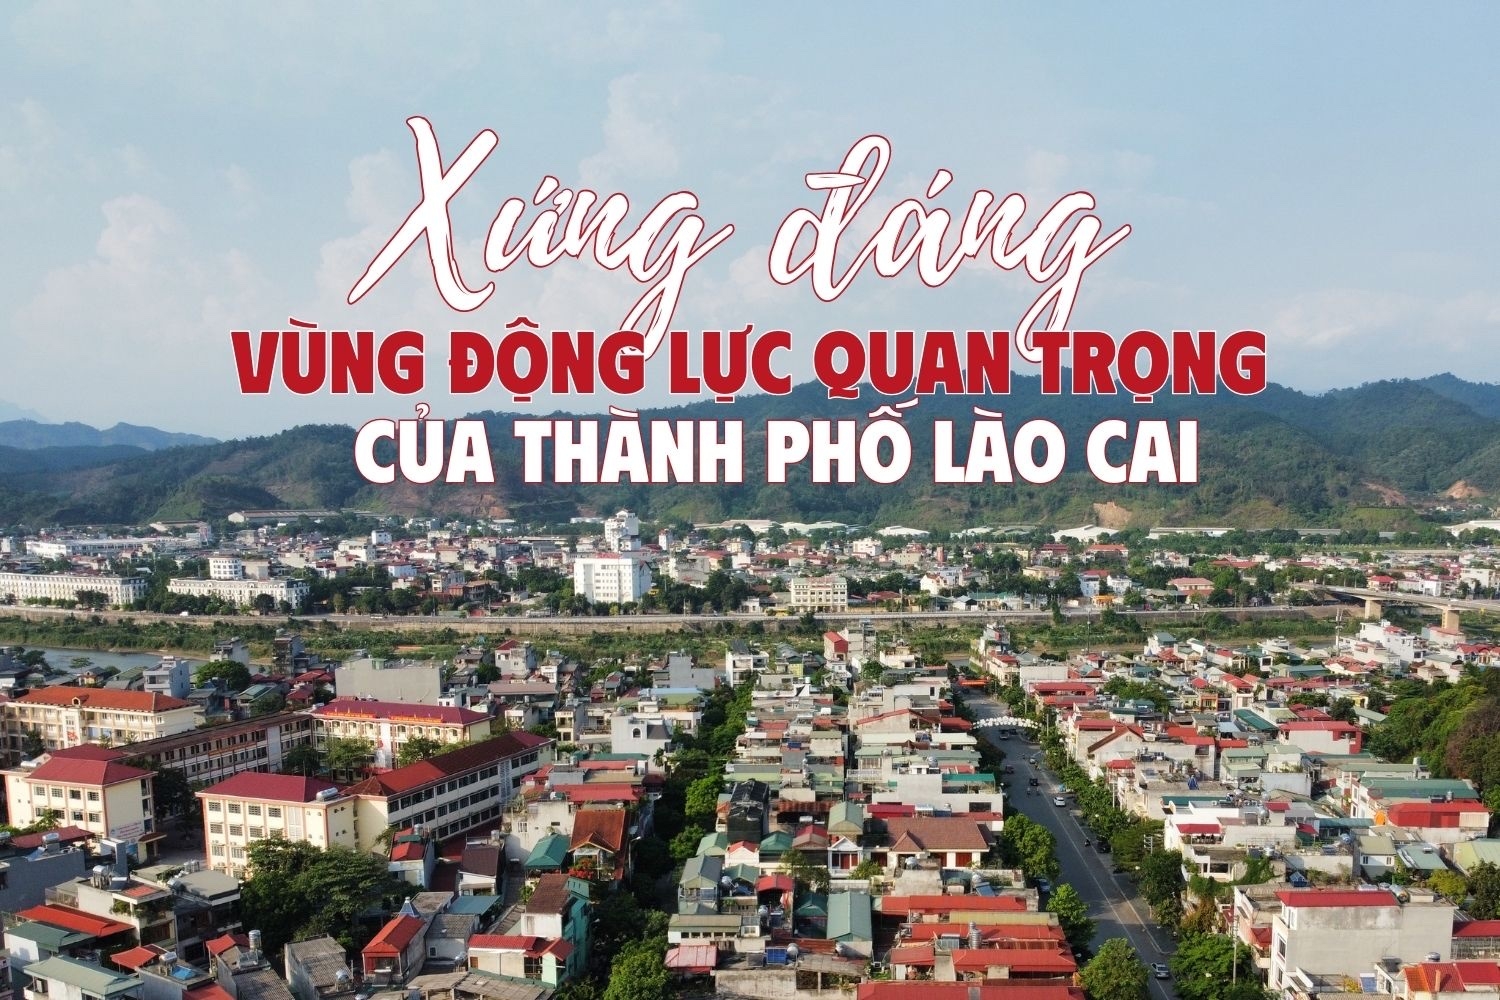 Xứng đáng vùng động lực quan trọng của thành phố Lào Cai